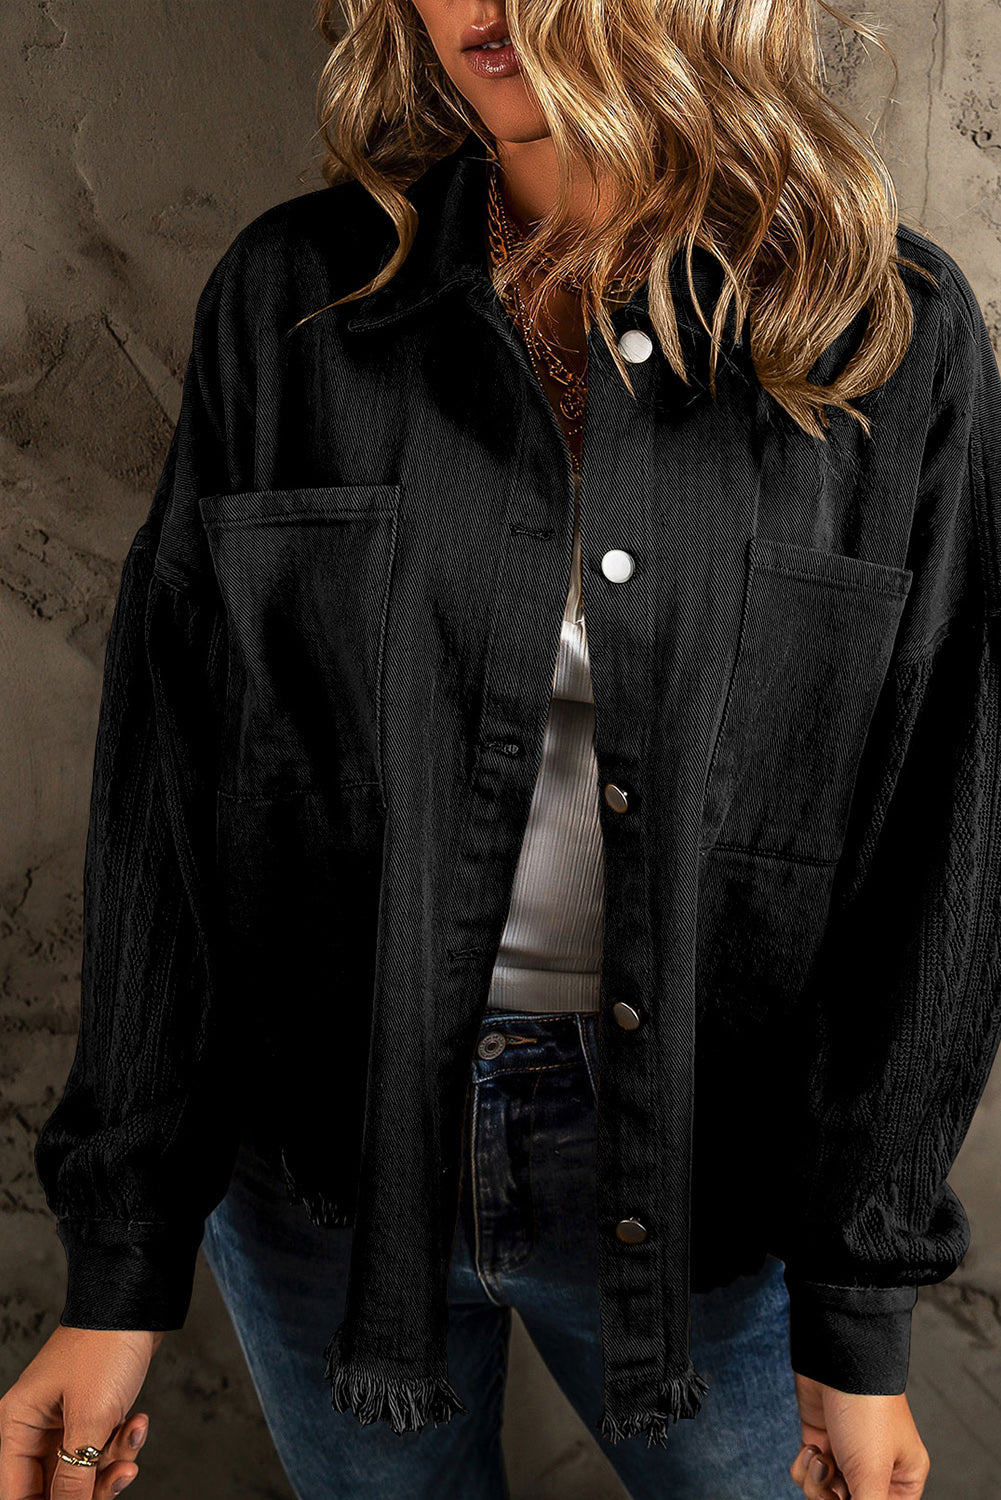 Black Textured Knit Sleeves Patchwork Raw Hem Denim Jacket Outerwear JT's Designer Fashion